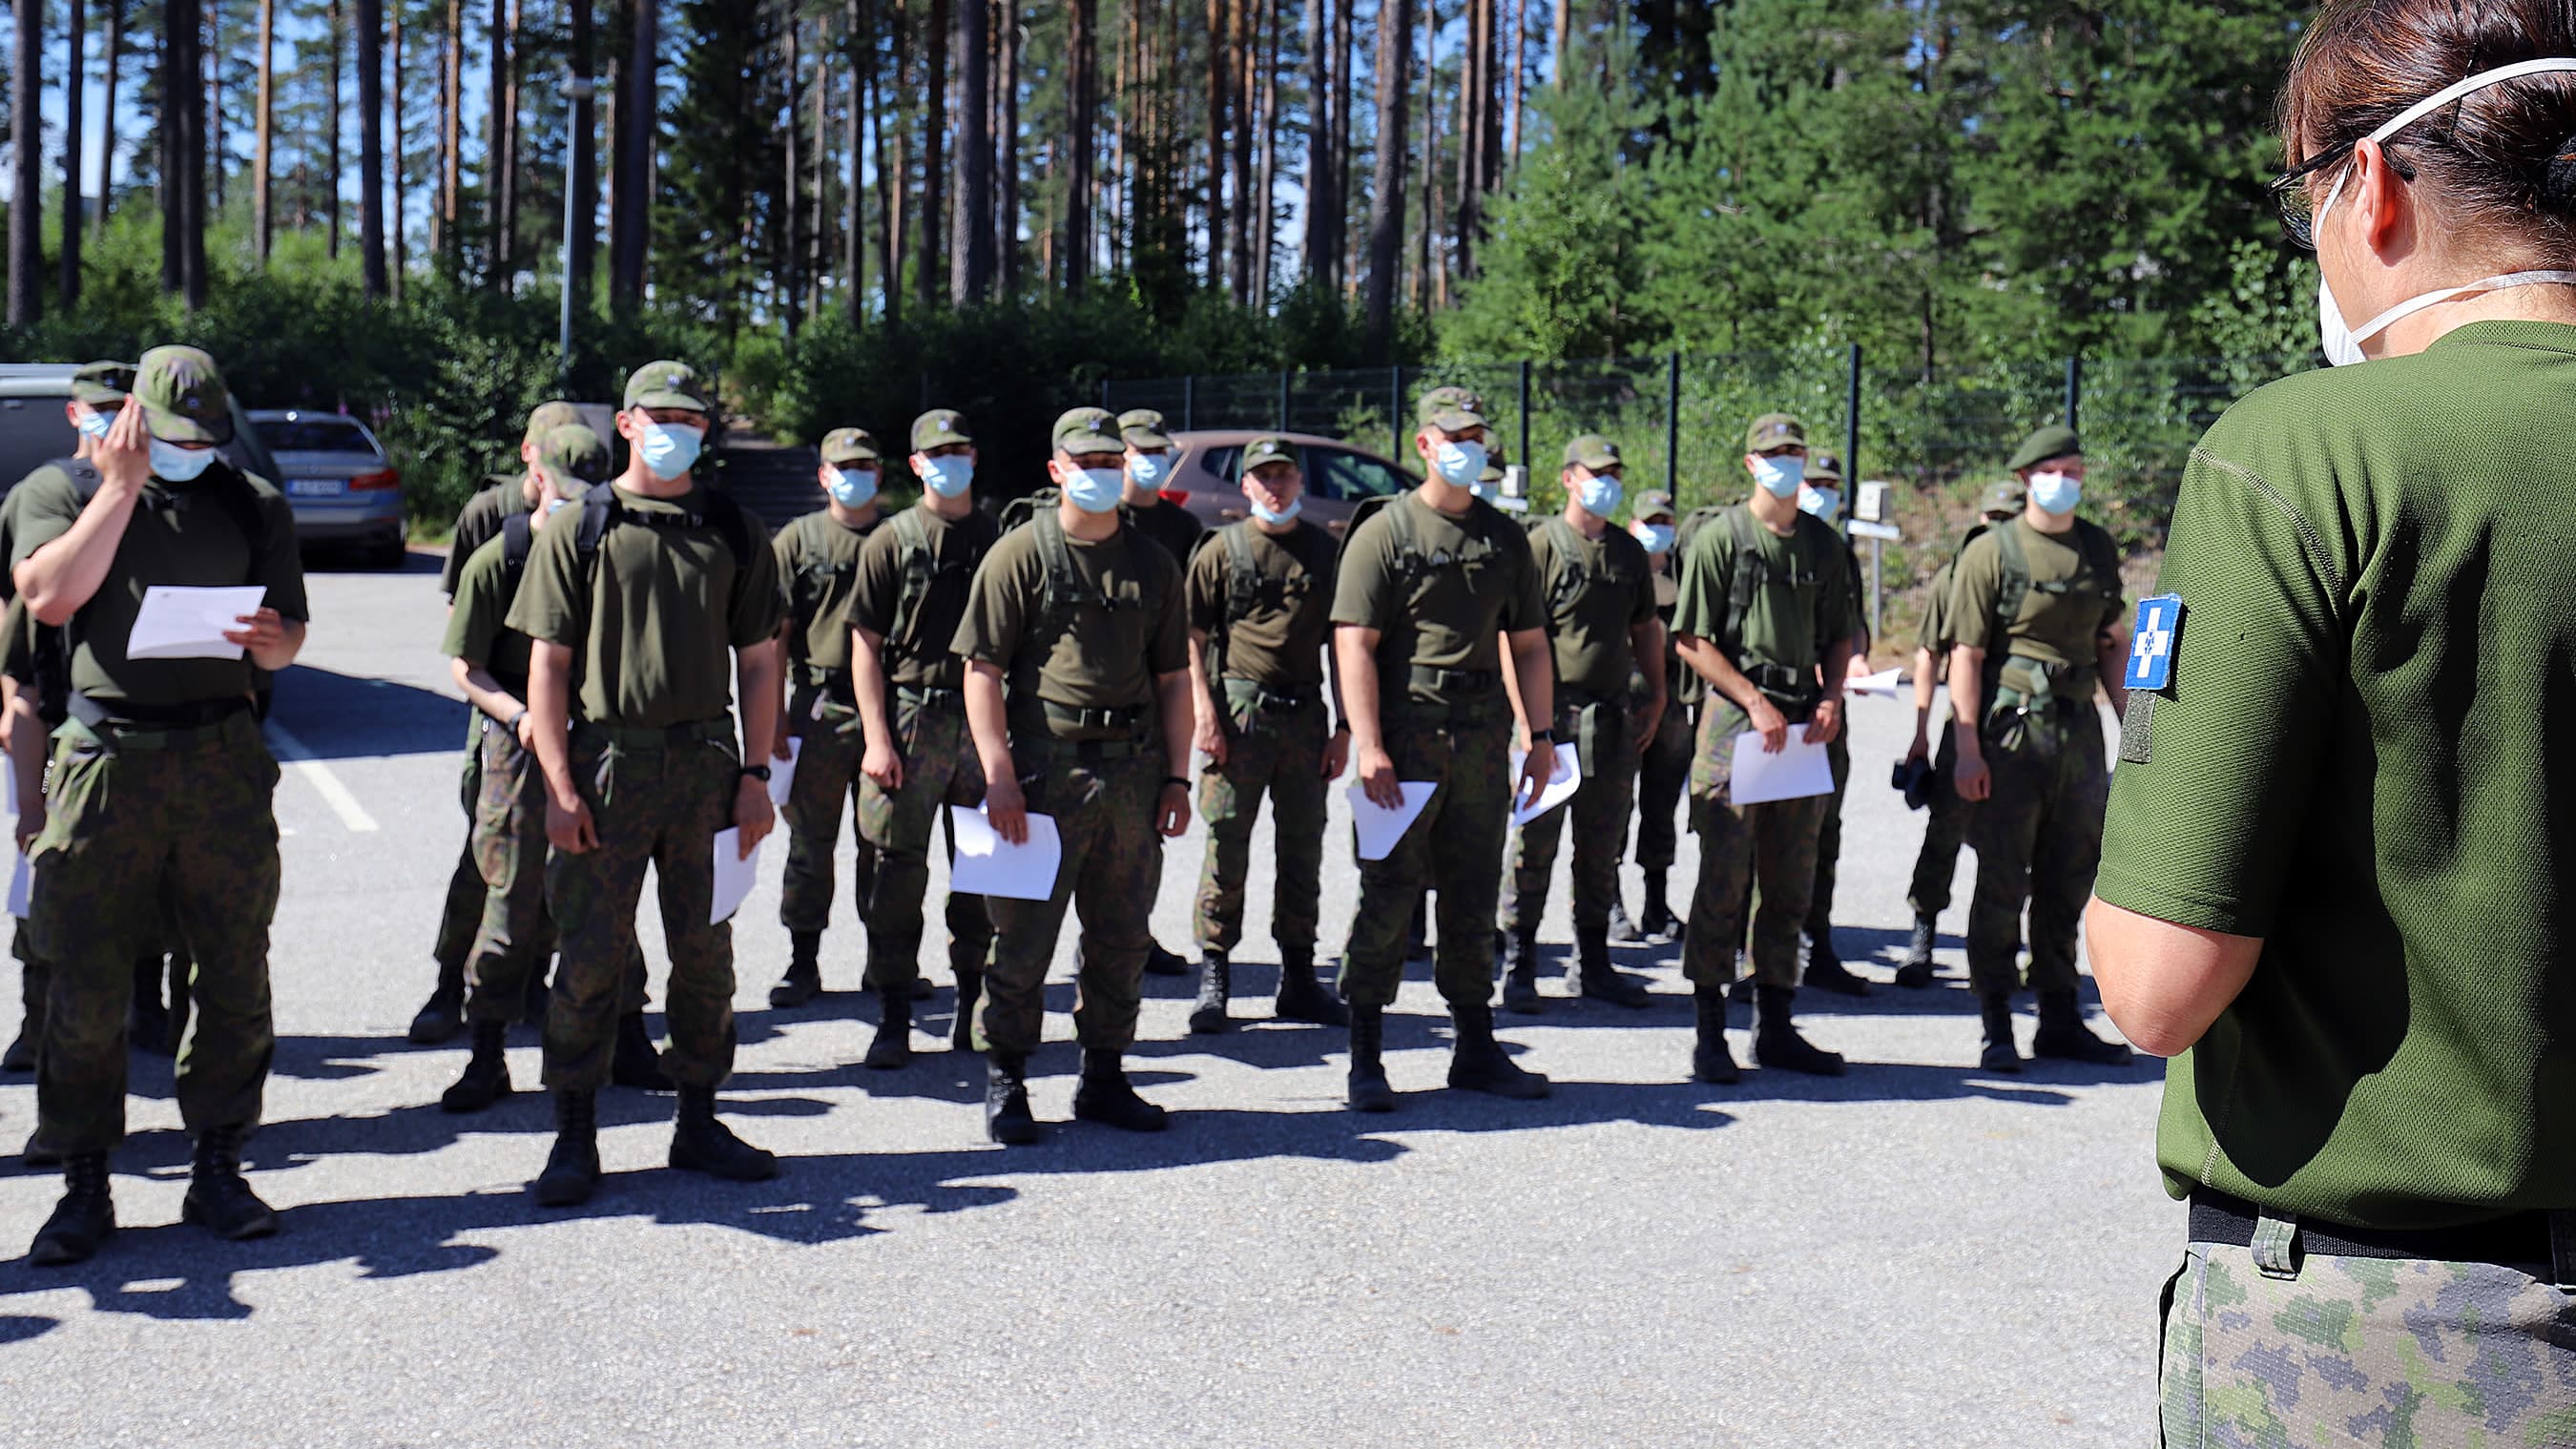 Kainuun prikaatin varushenkilöitä kesähelteessä ulkona heinäkuun puolivälissä 2021. Varushenkilöillä on kasvomaskit yllään koronavarotoimien vuoksi.